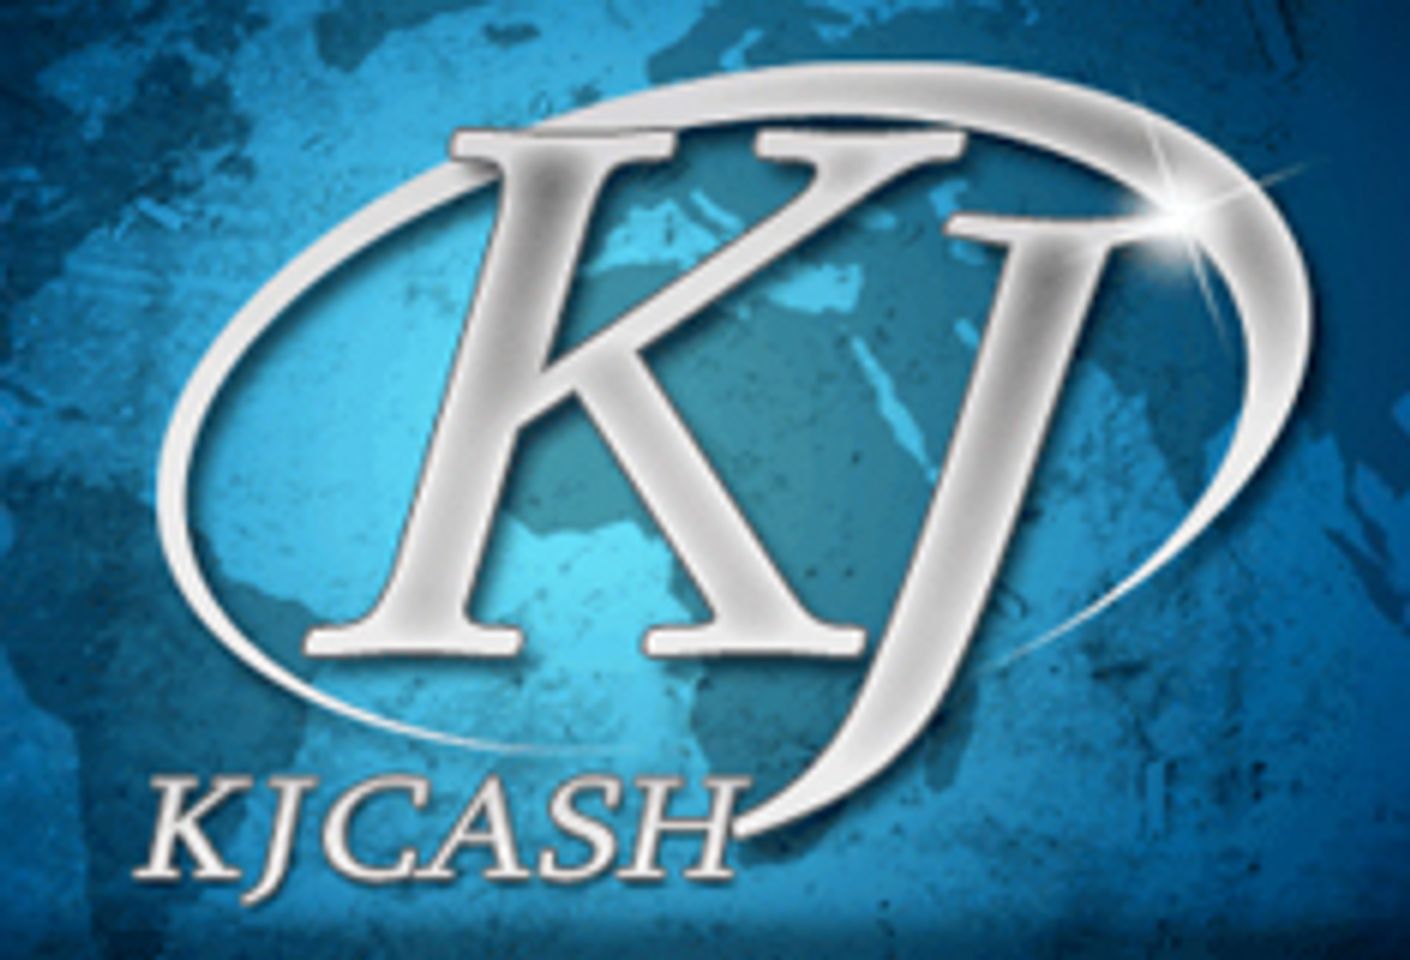 KJCash Announces Program Changes